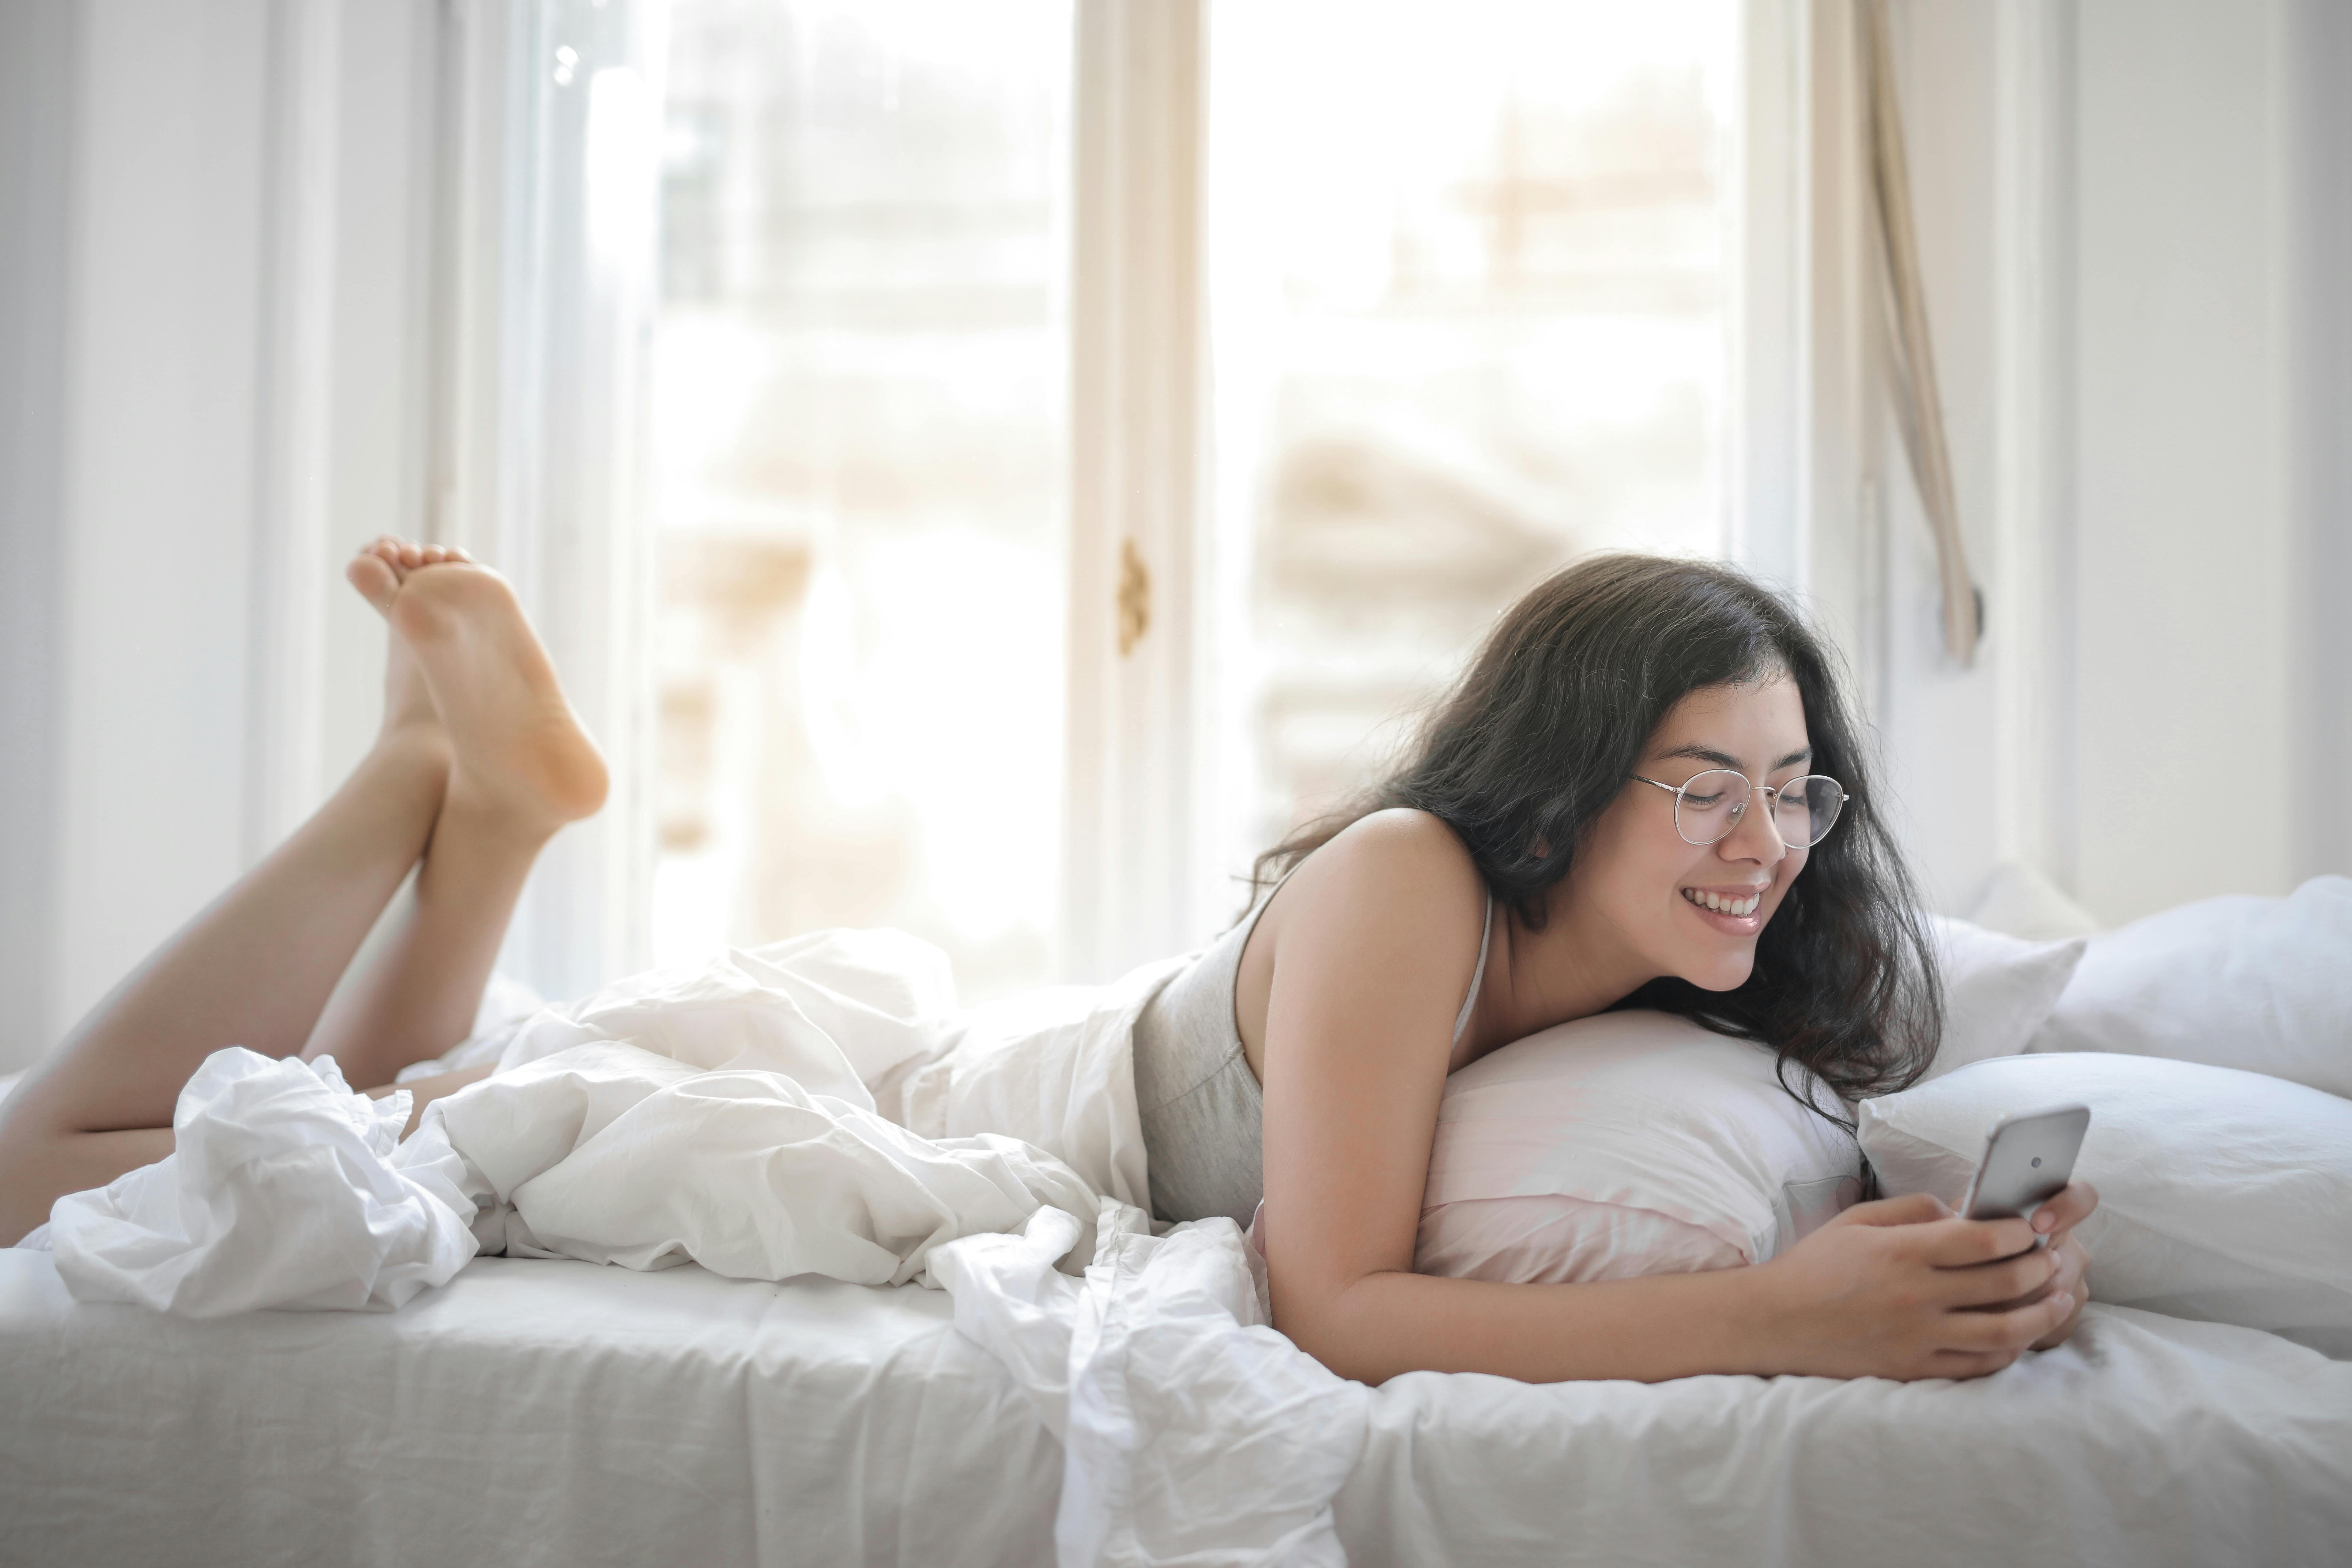 3 έξυπνα tips για να αντισταθείς στο κινητό σου πριν πέσεις για ύπνο